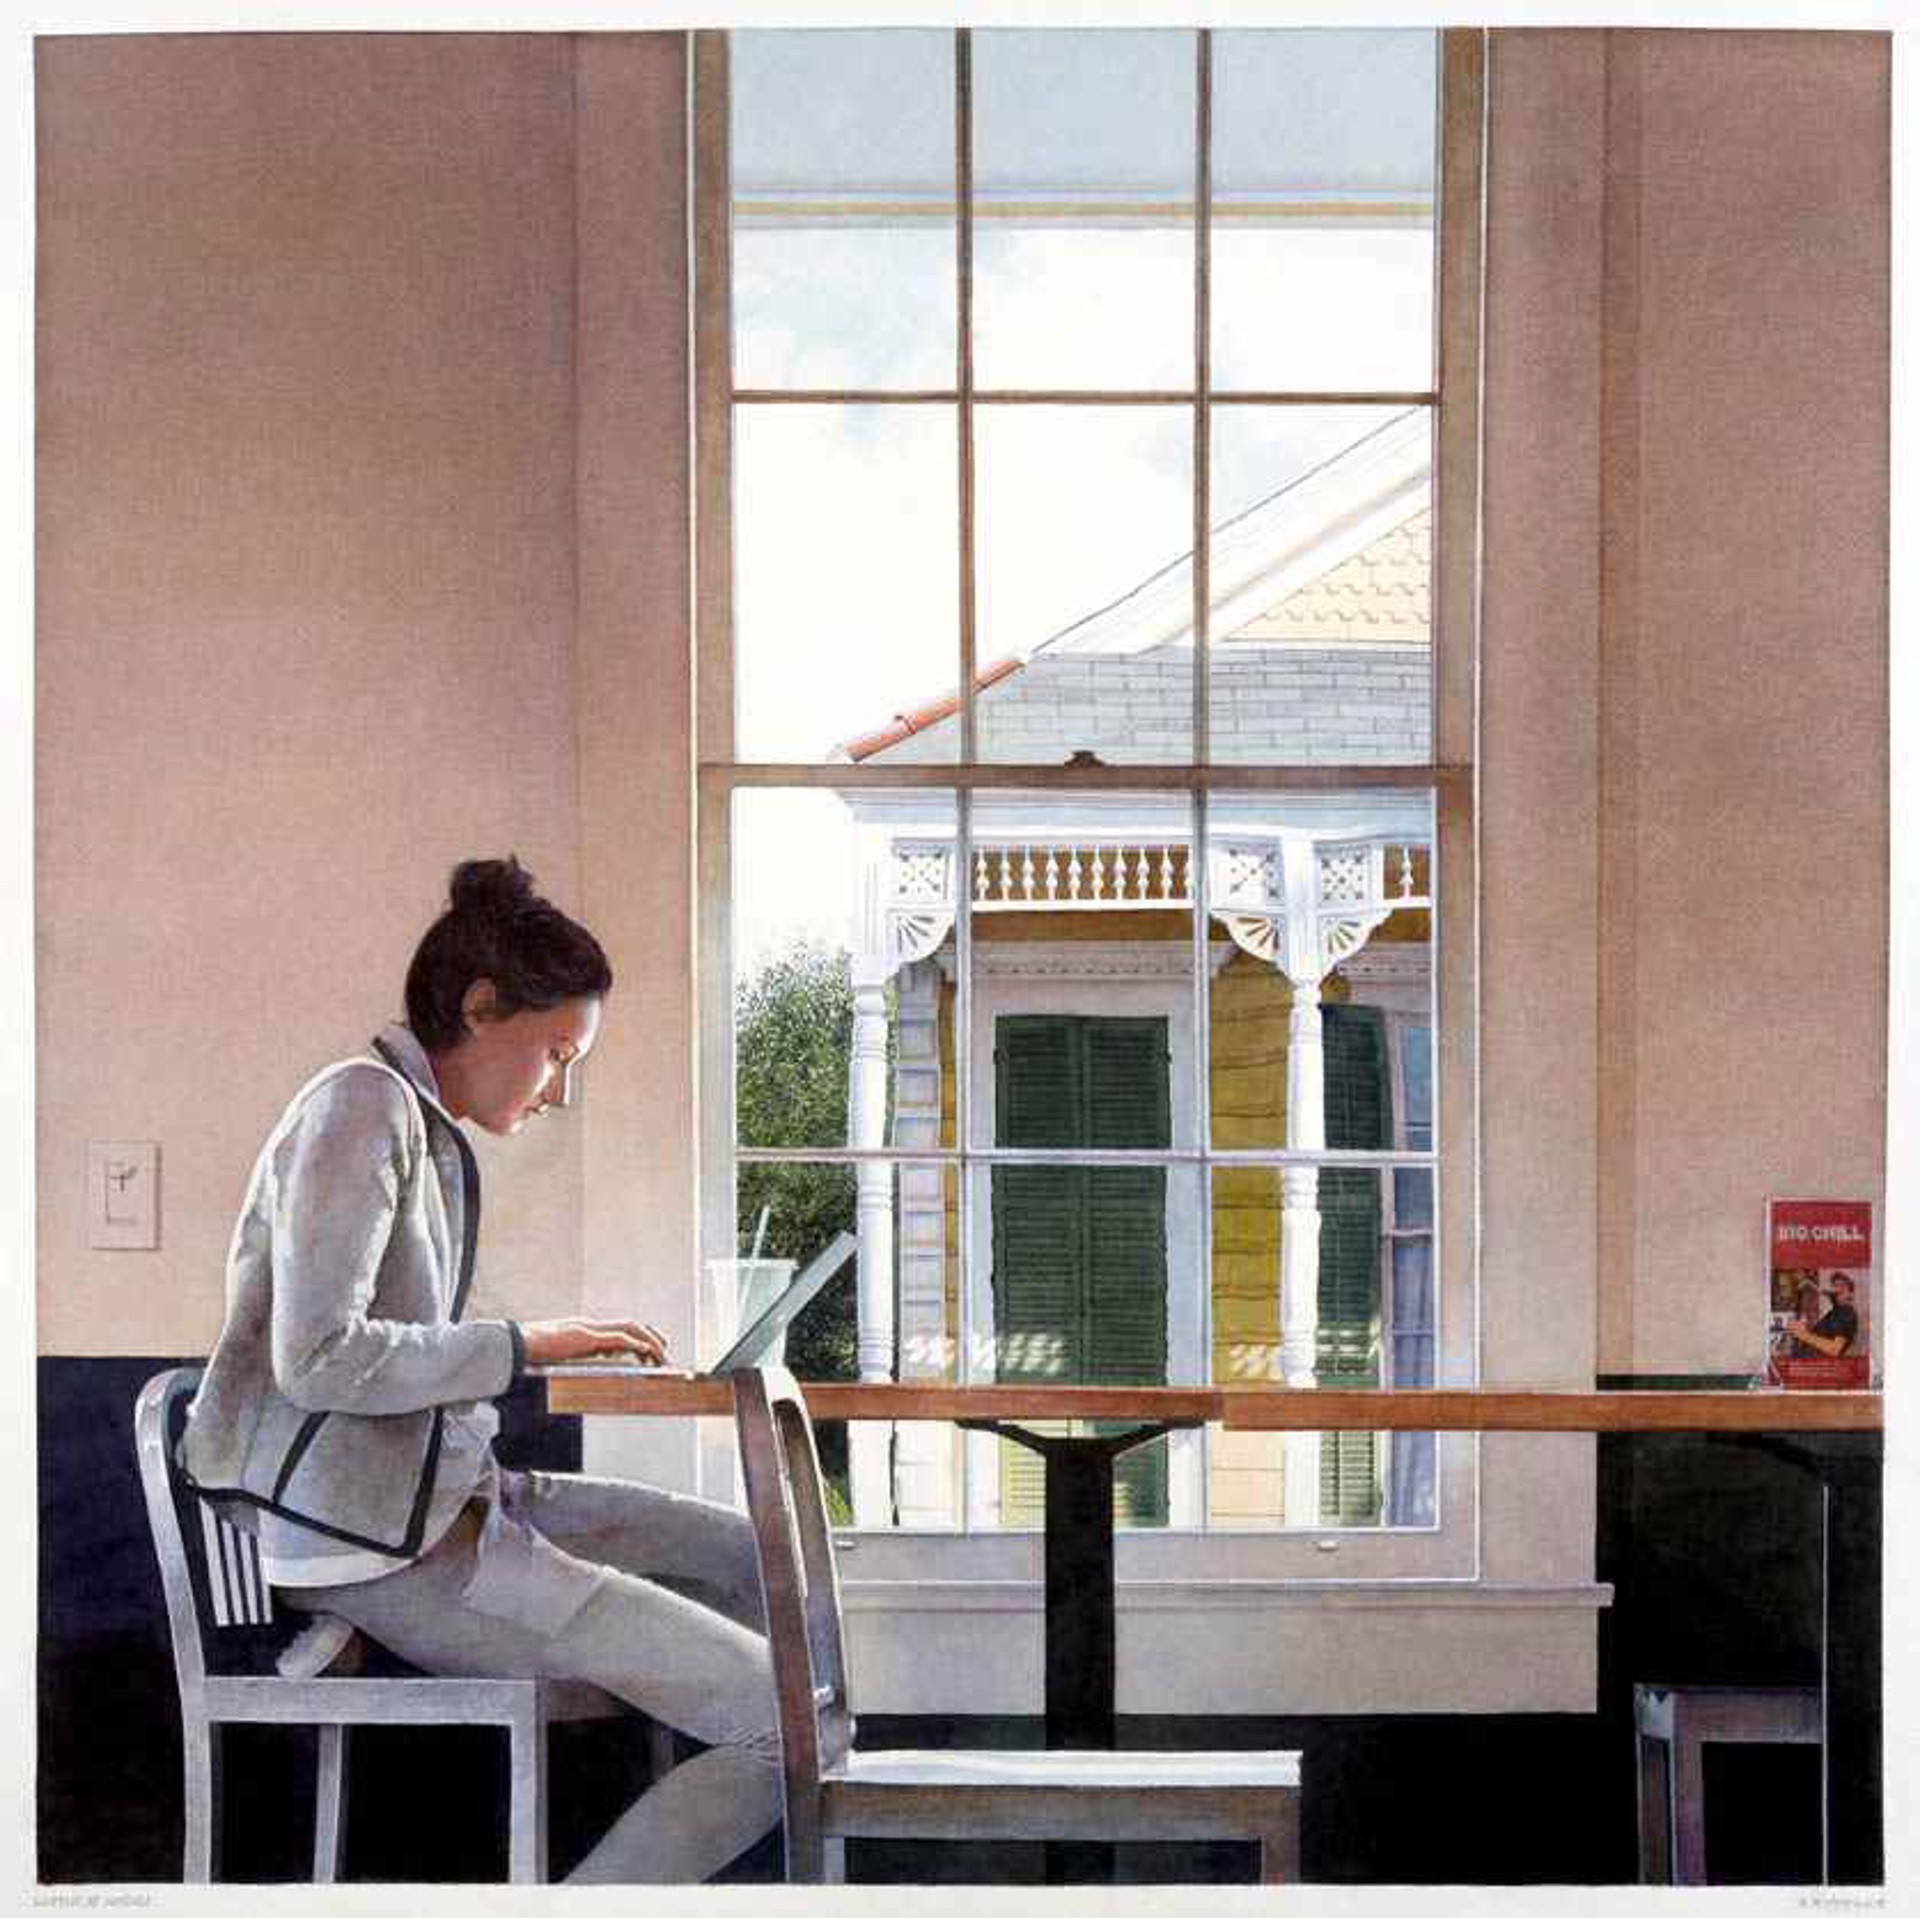 Woman at Window by Stephan Hoffpauir